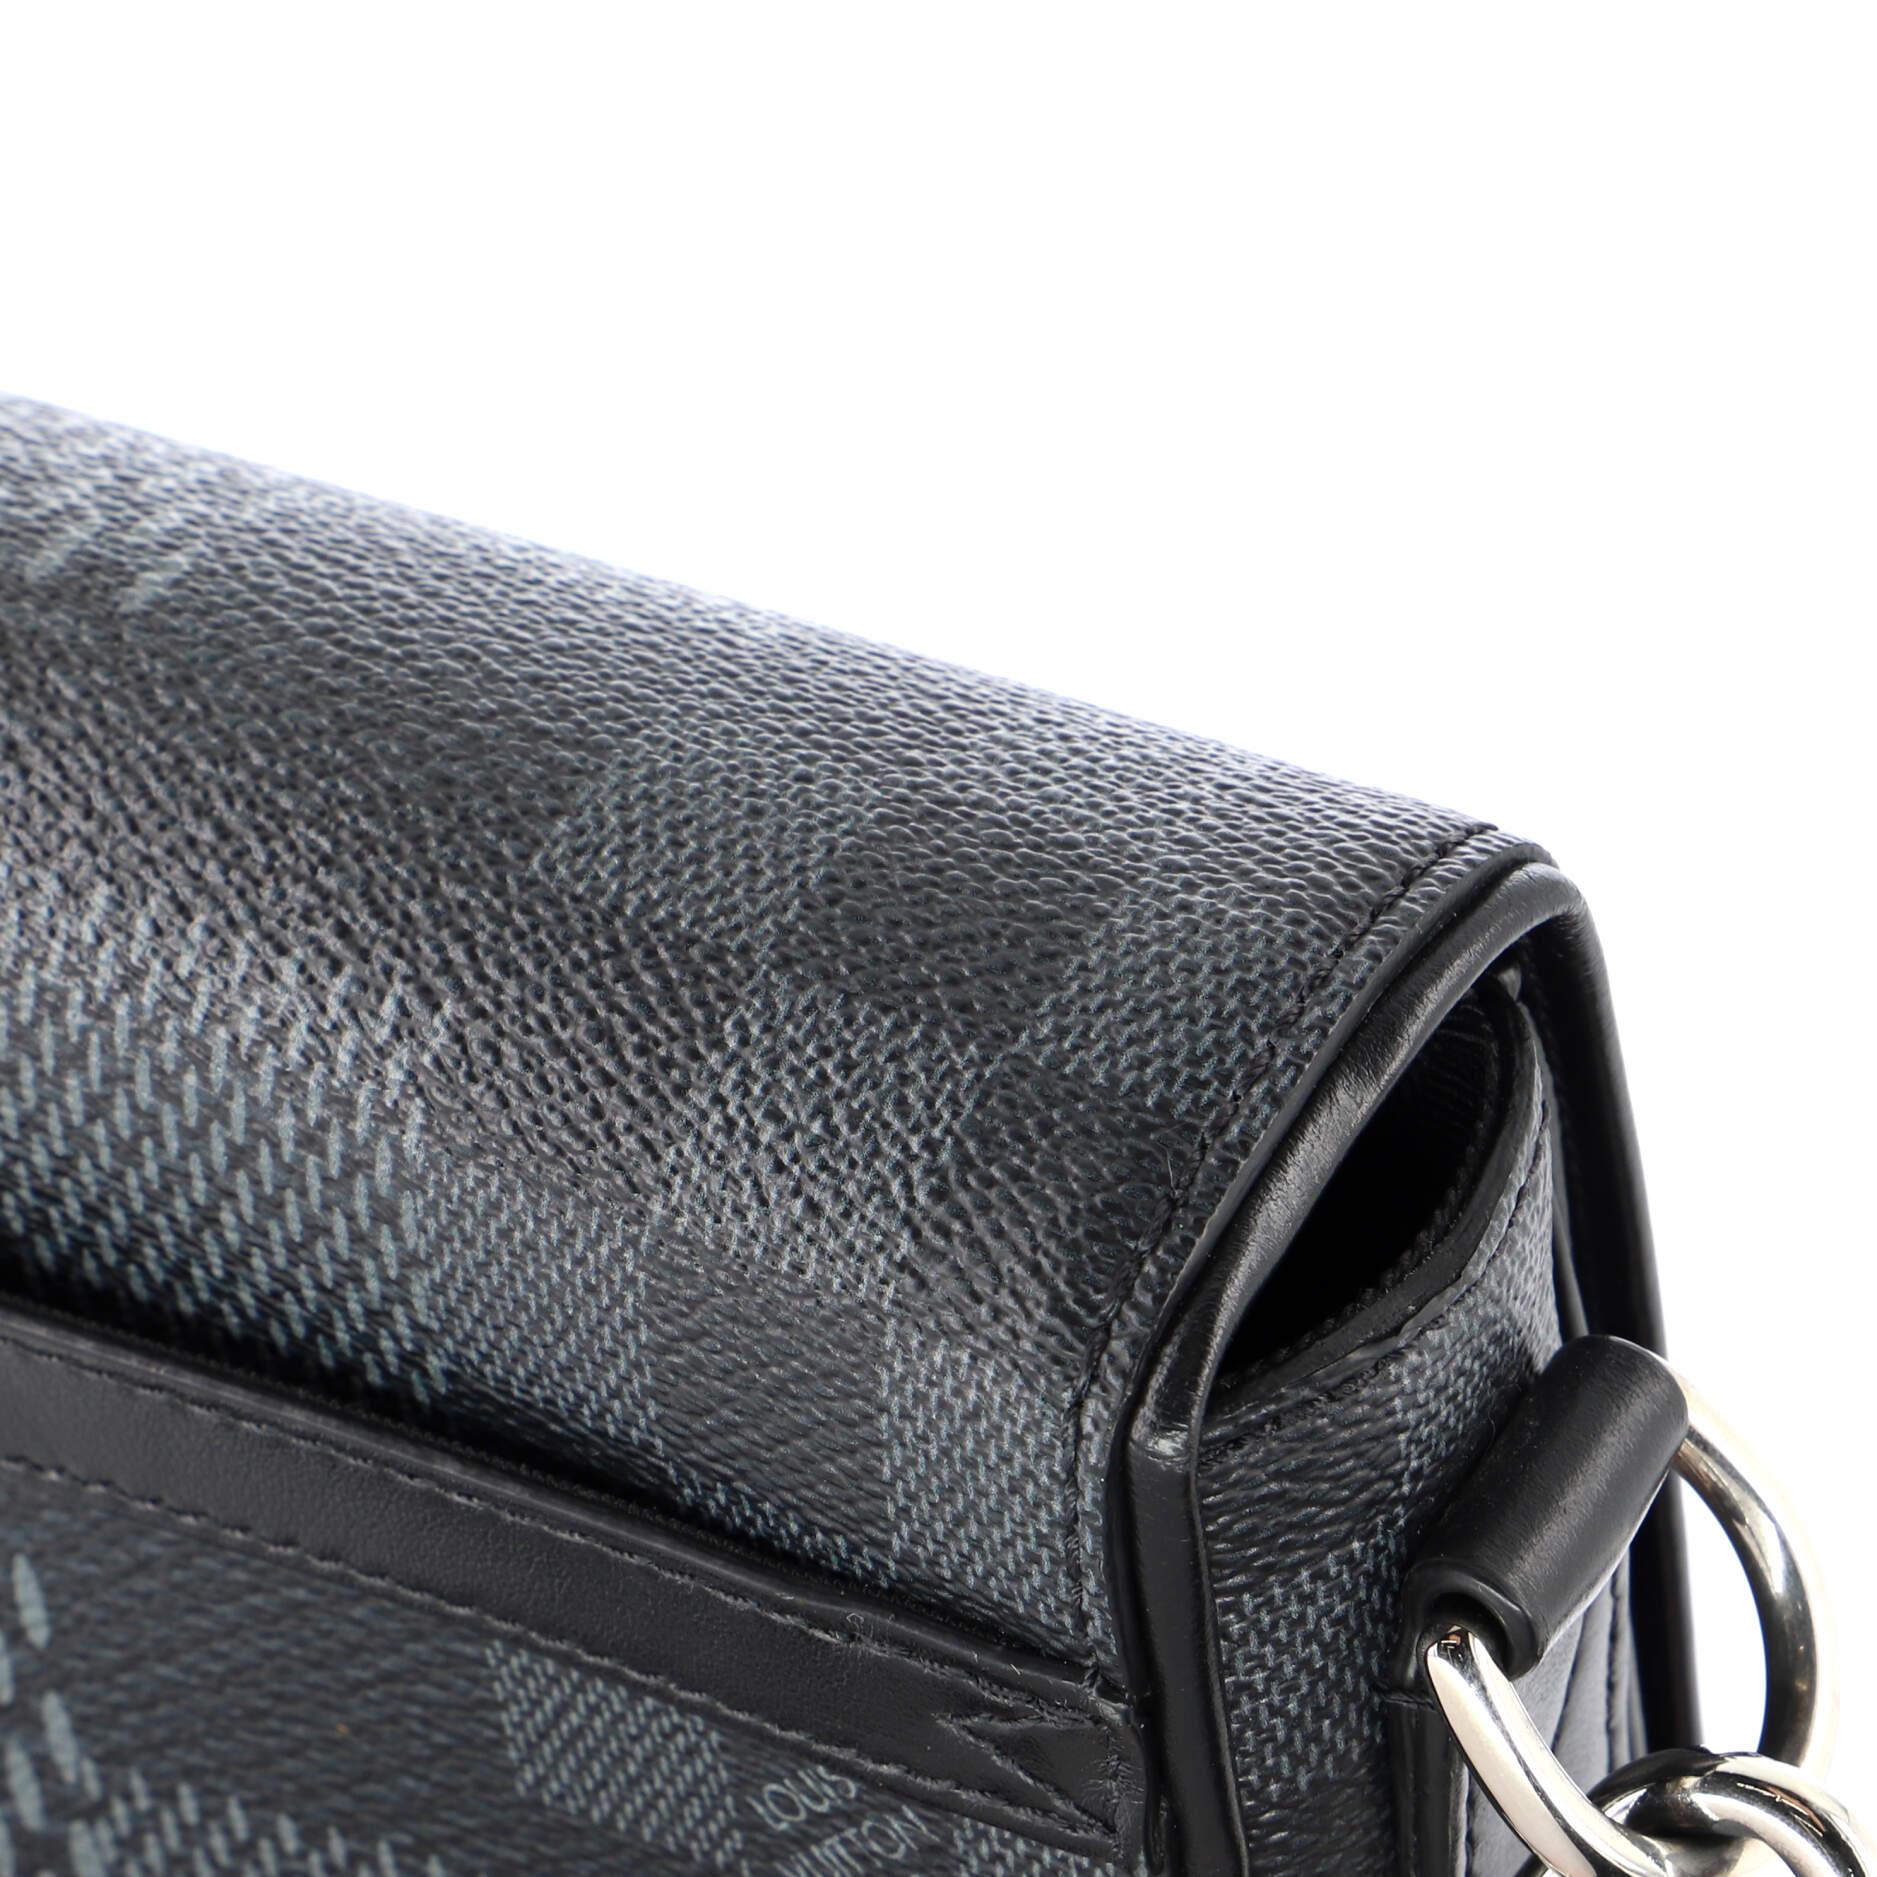 Louis Vuitton Studio Messenger Bag Limited Edition Damier Graphite 3D 2